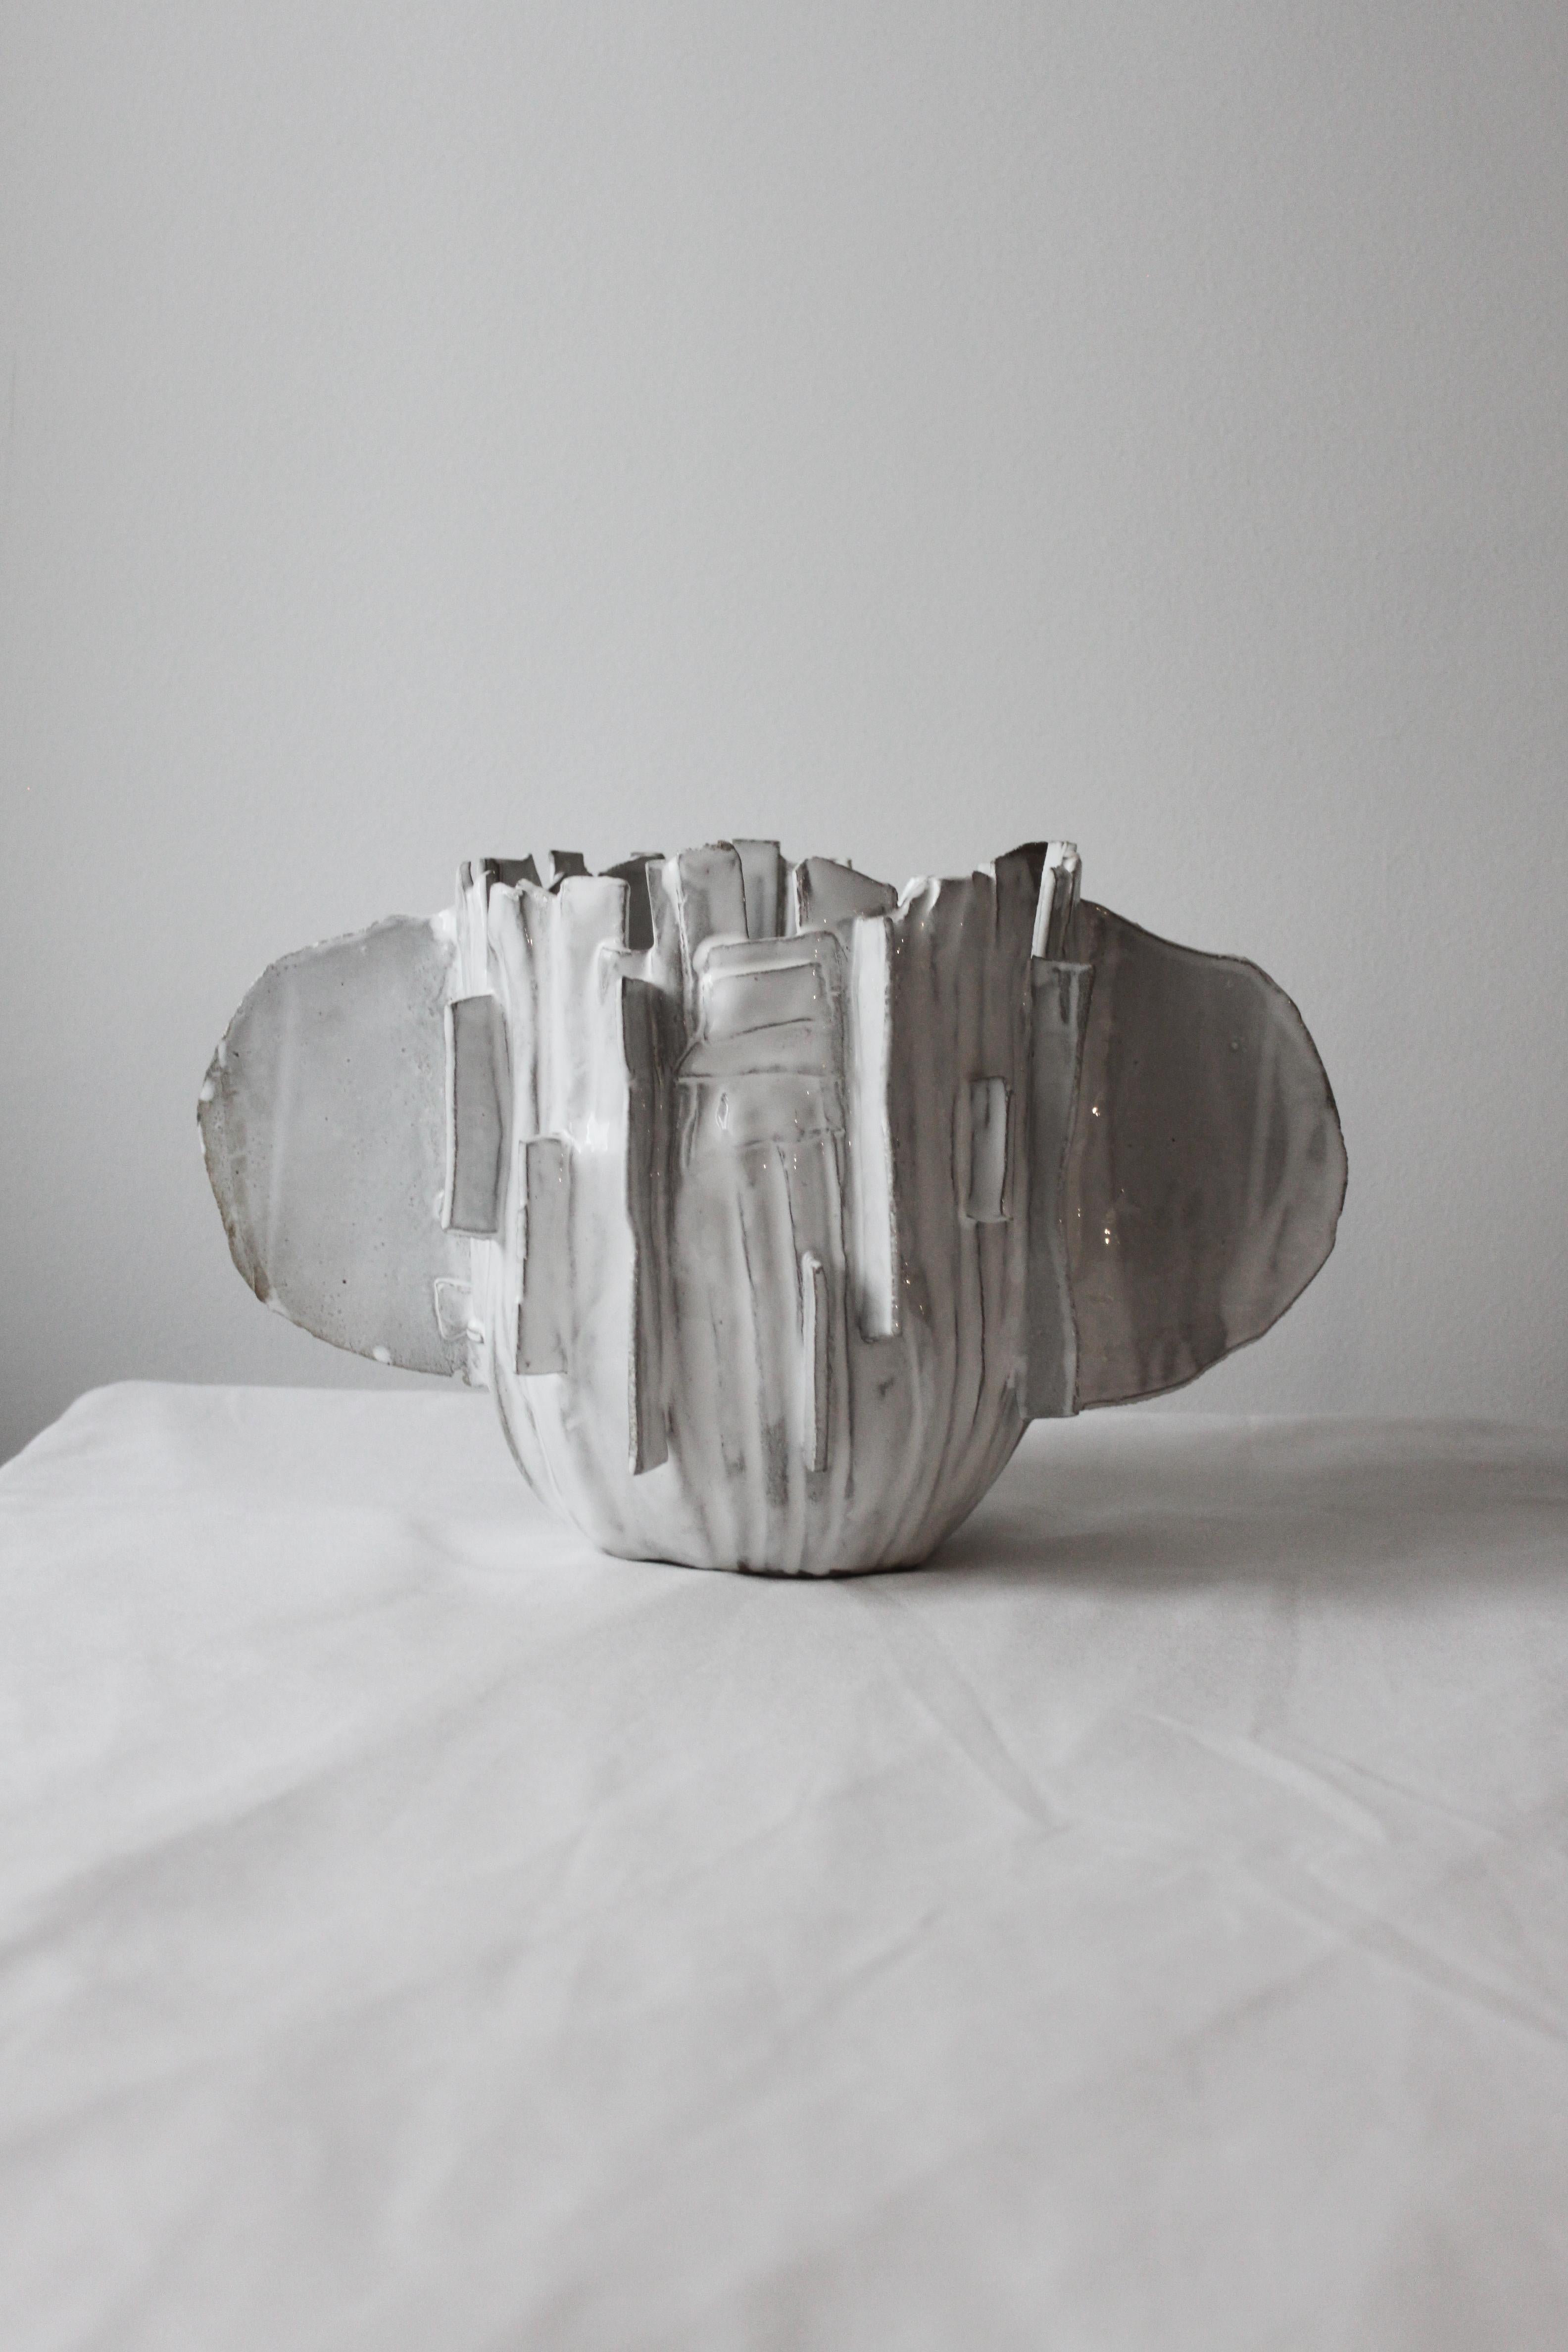 Keramikvase Ribbonear von Lava Studio Ceramics
Einzigartig, 2020
MATERIALIEN: Glasiertes Steingut
Abmessungen: H 25 cm x T 18-20-40 cm

Lava ceramics ist ein kollektives Studio mit Sitz in Athen.